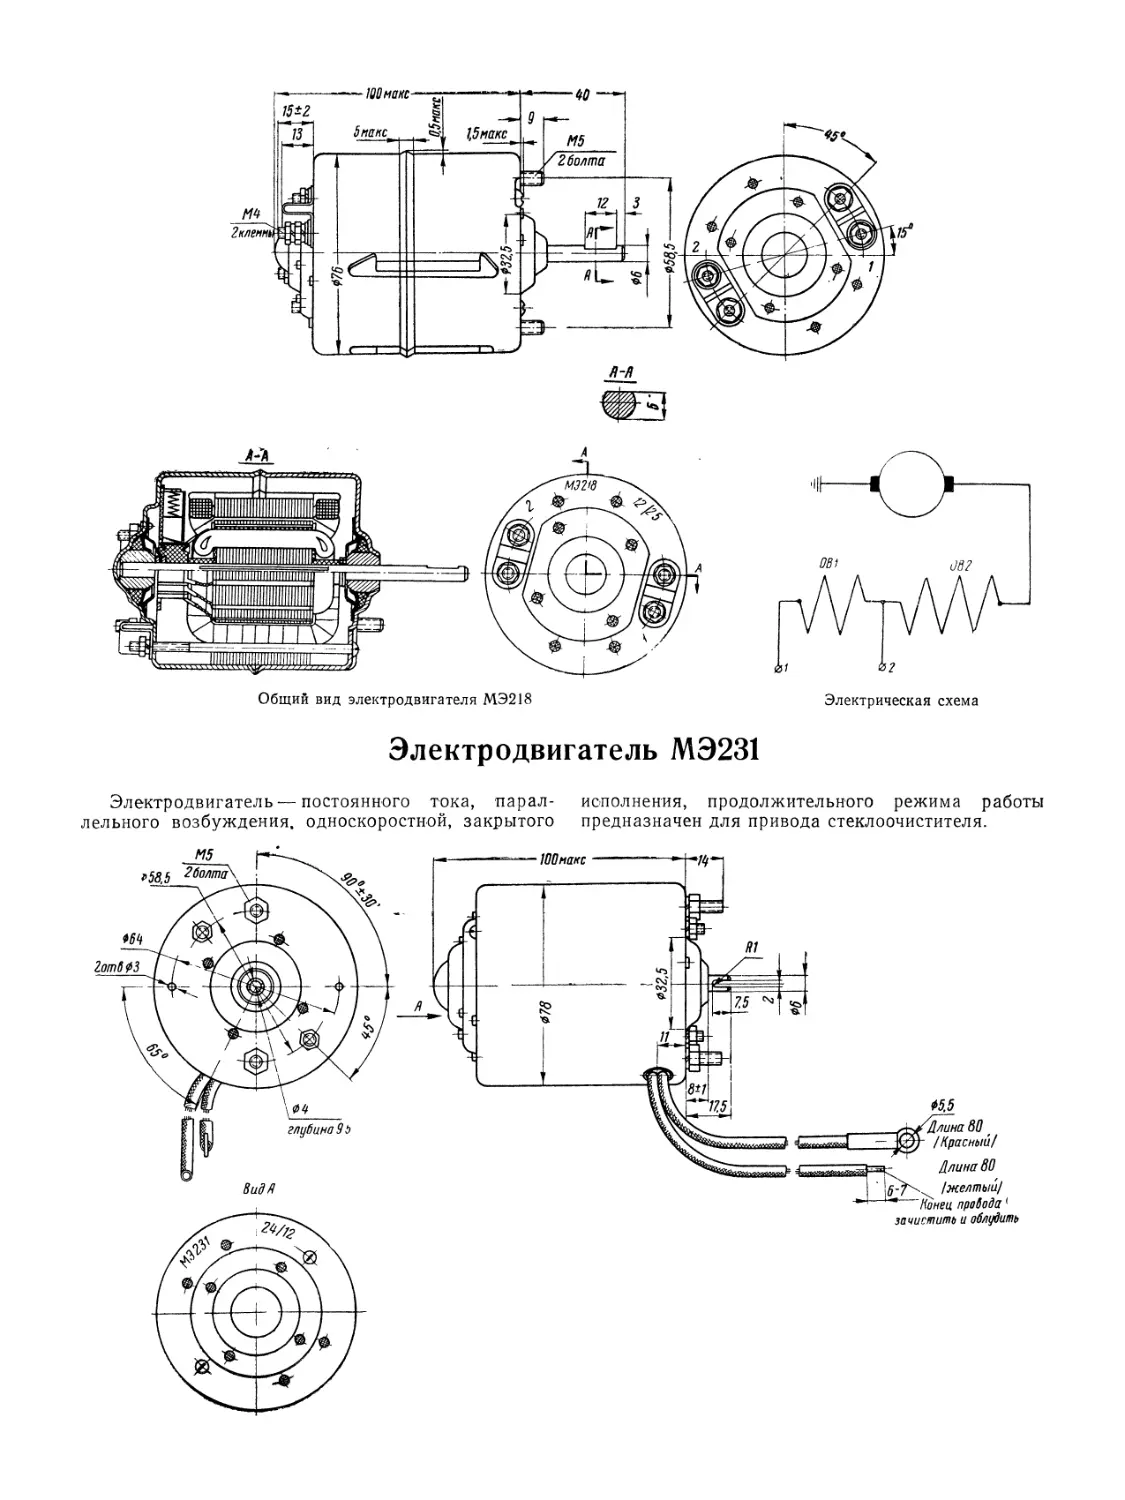 Электродвигатель МЭ231